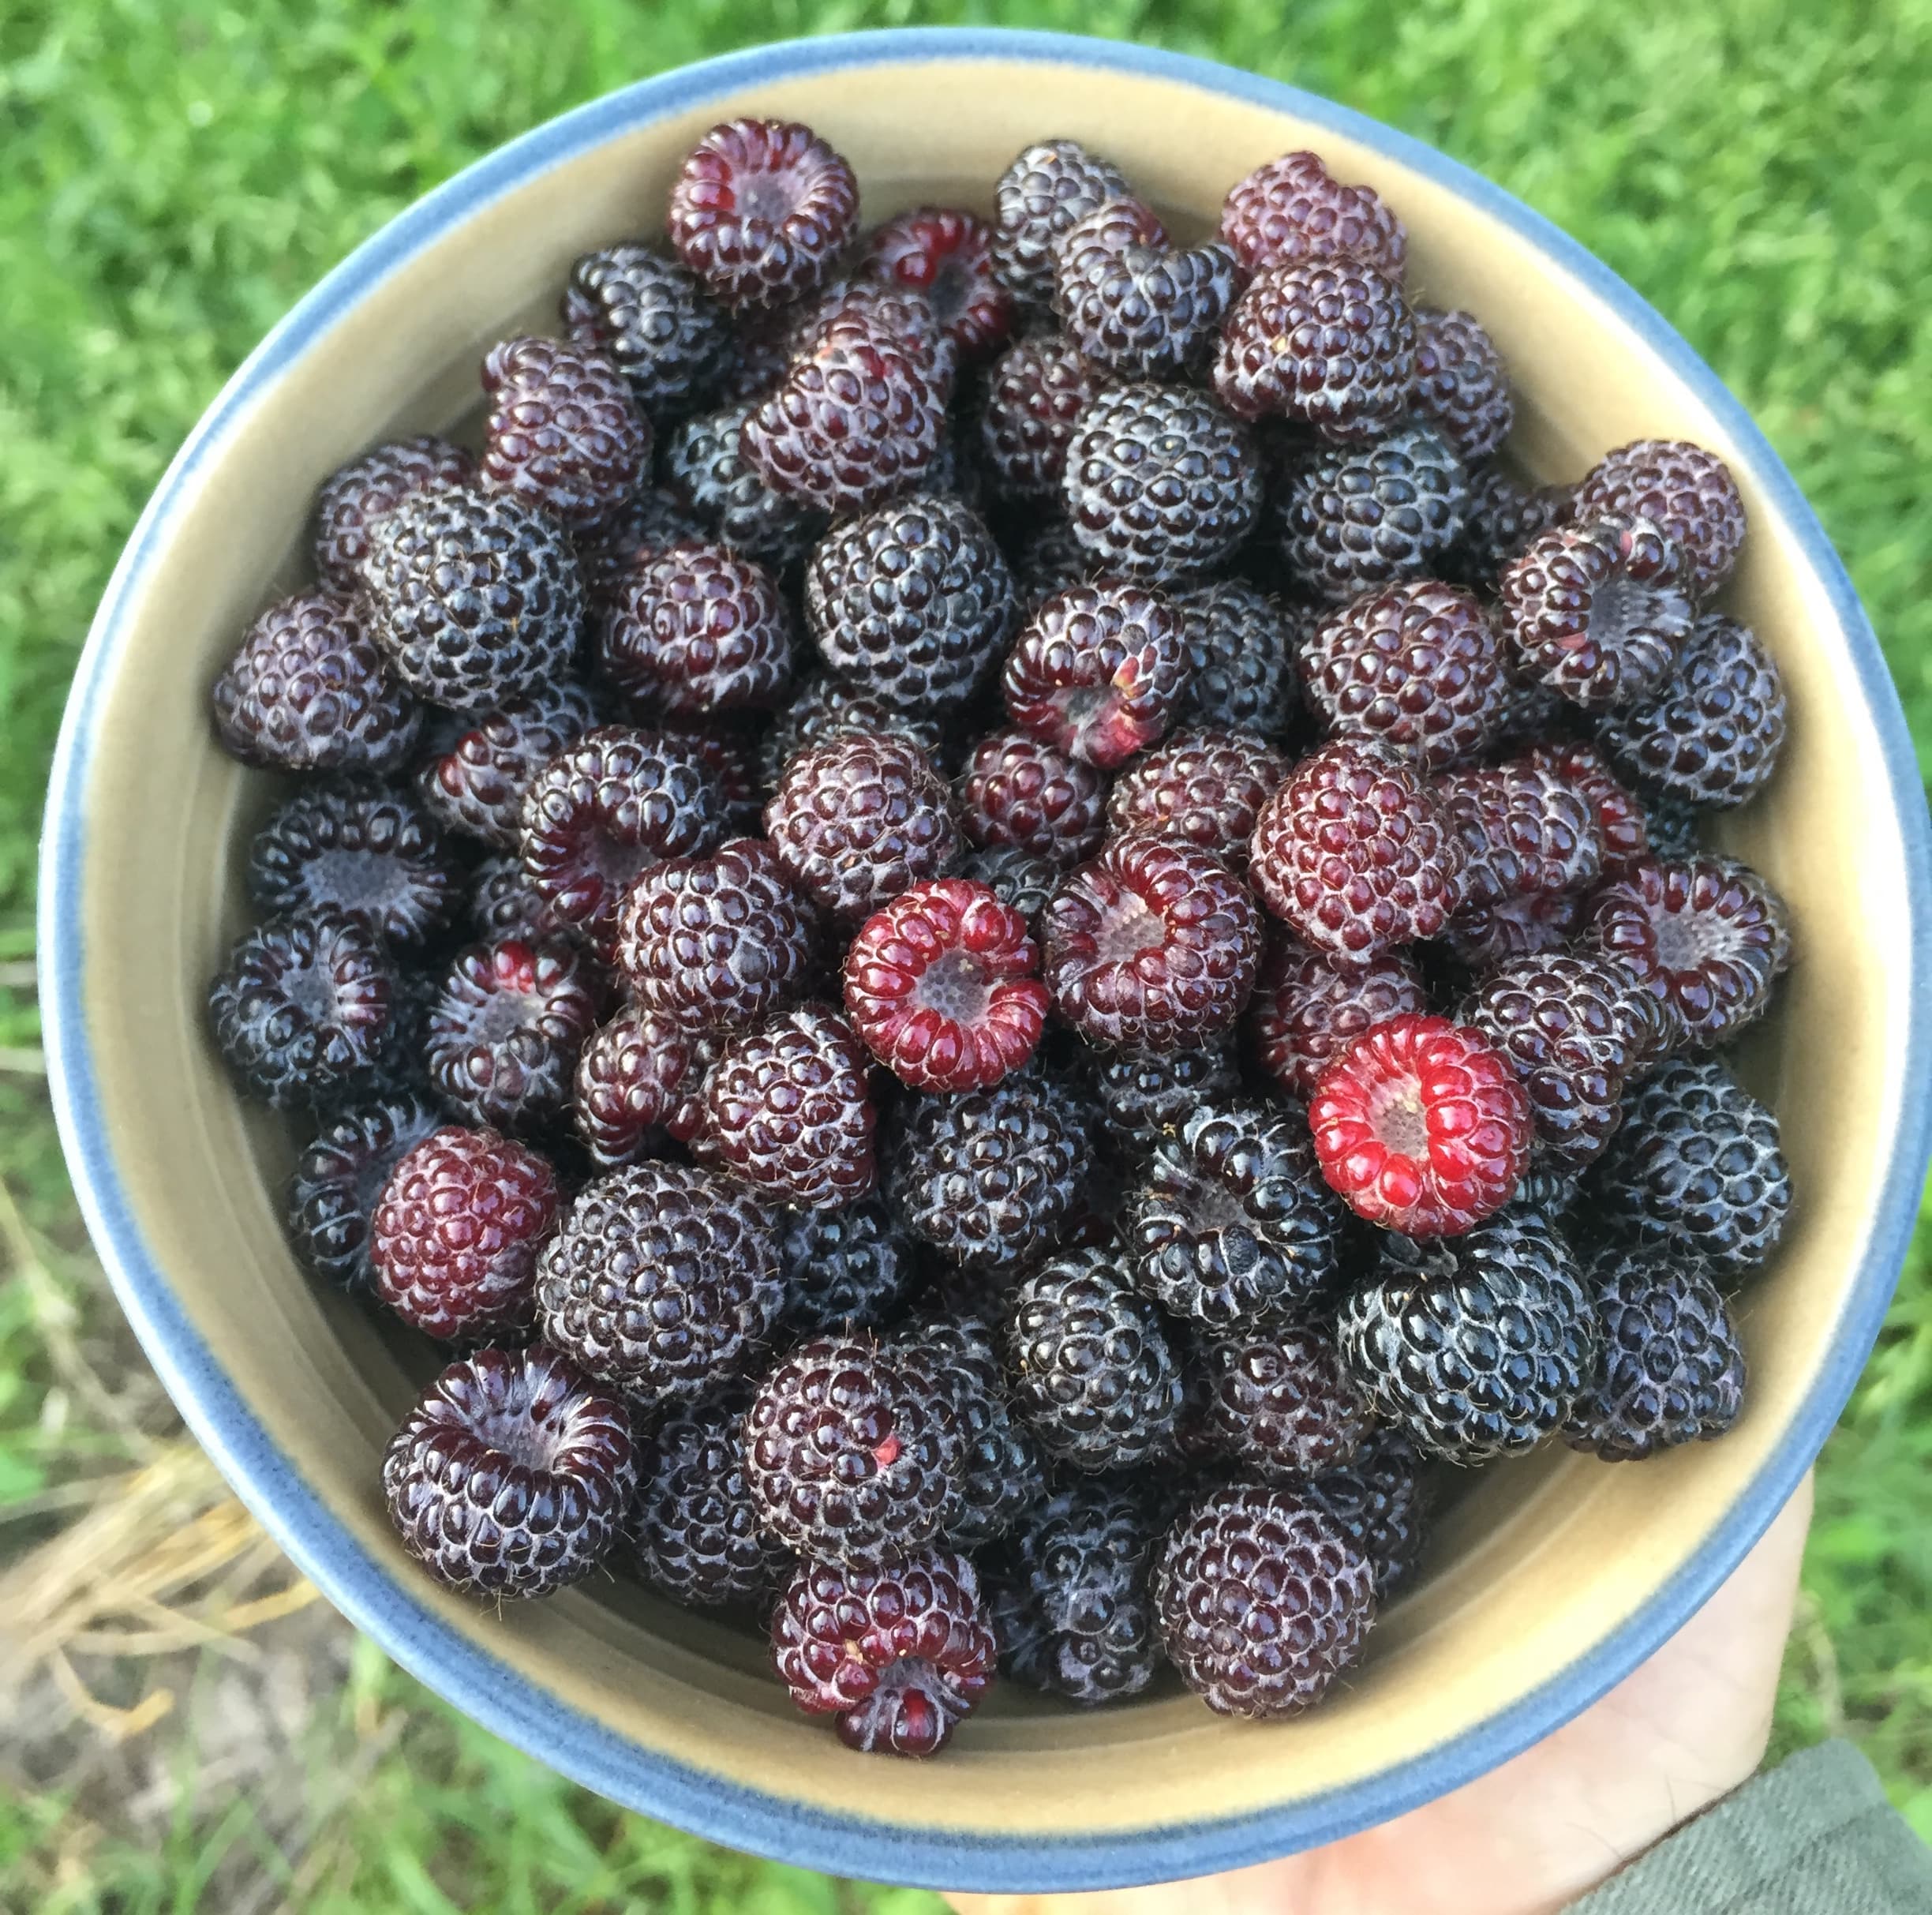 Freshly harvested black raspberries in early summer.